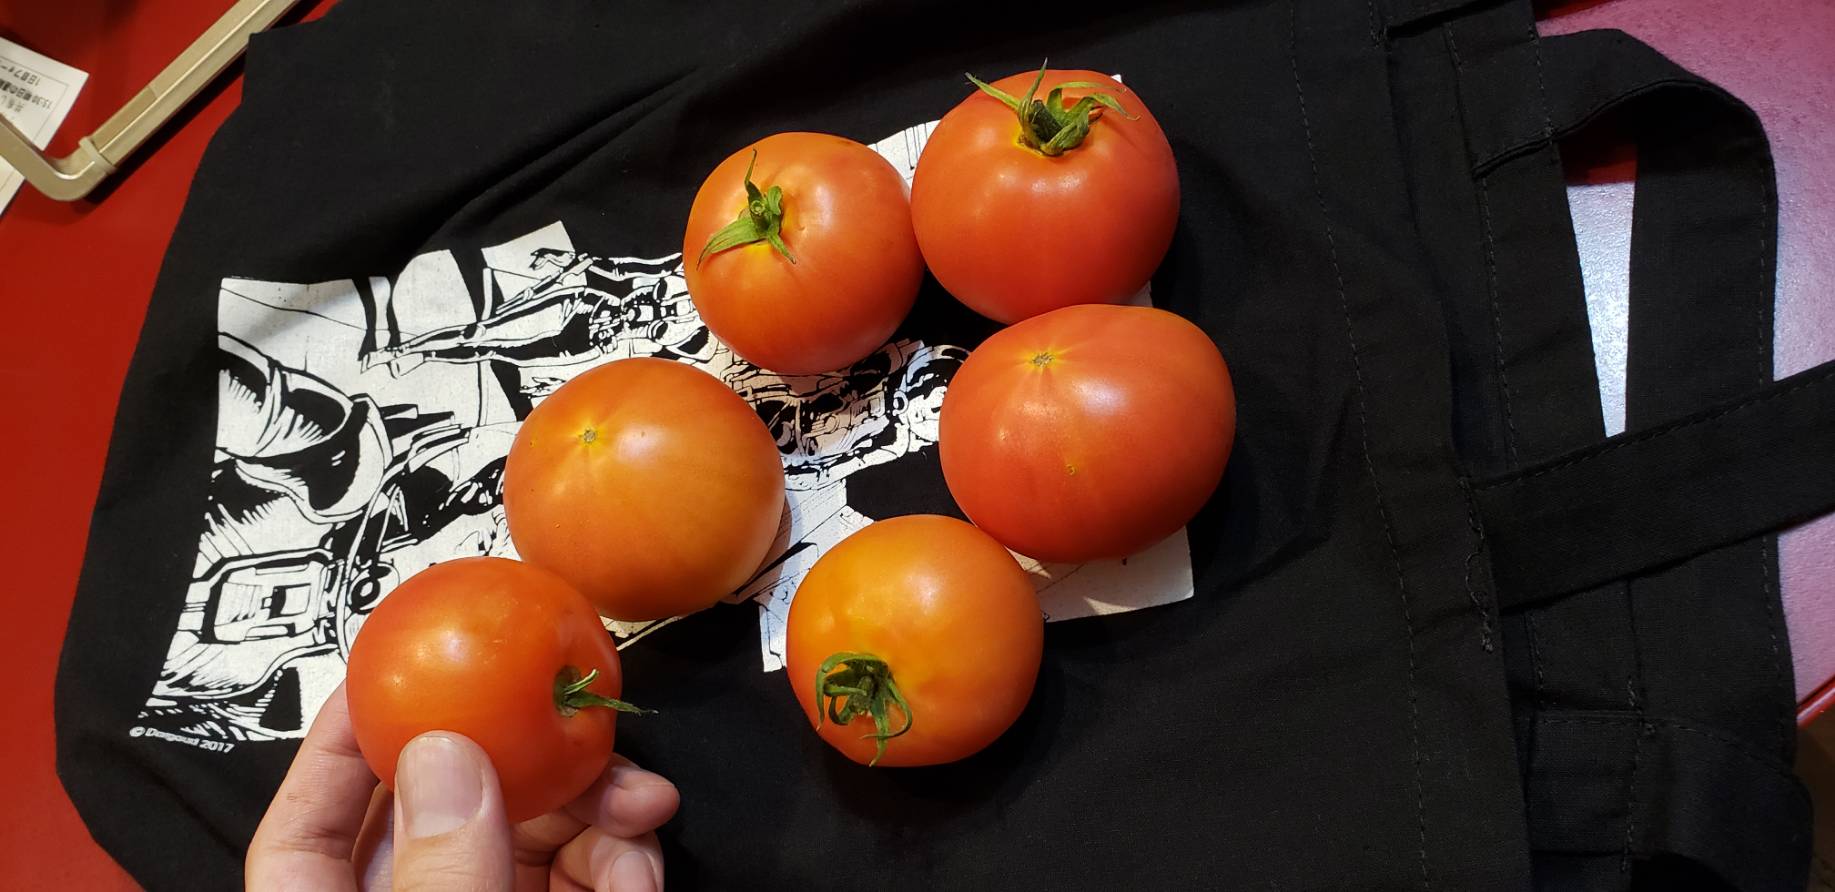 村田雄介 今日の収穫 スーパーで買ったトマトの傷んだやつを埋めたとこから生えたトマトなんだけど 本当に揃えたように元のトマトと同じサイズになった T Co 2mamneezjg Twitter